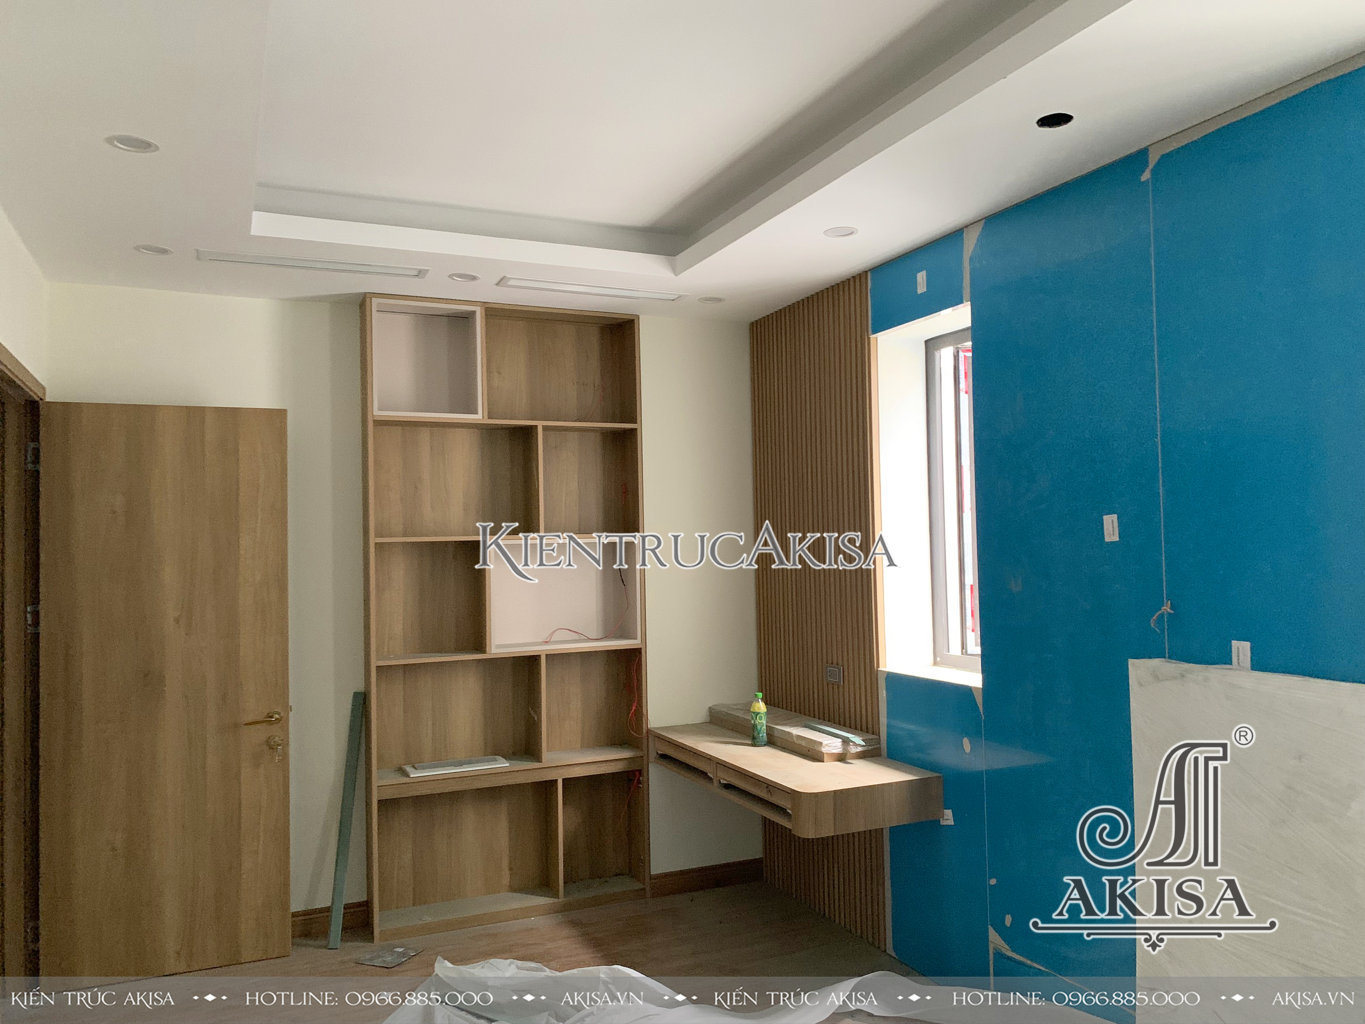 Akisa thiết kế và thi công cải tạo nội thất biệt thự liền kề tại Quảng Ninh.